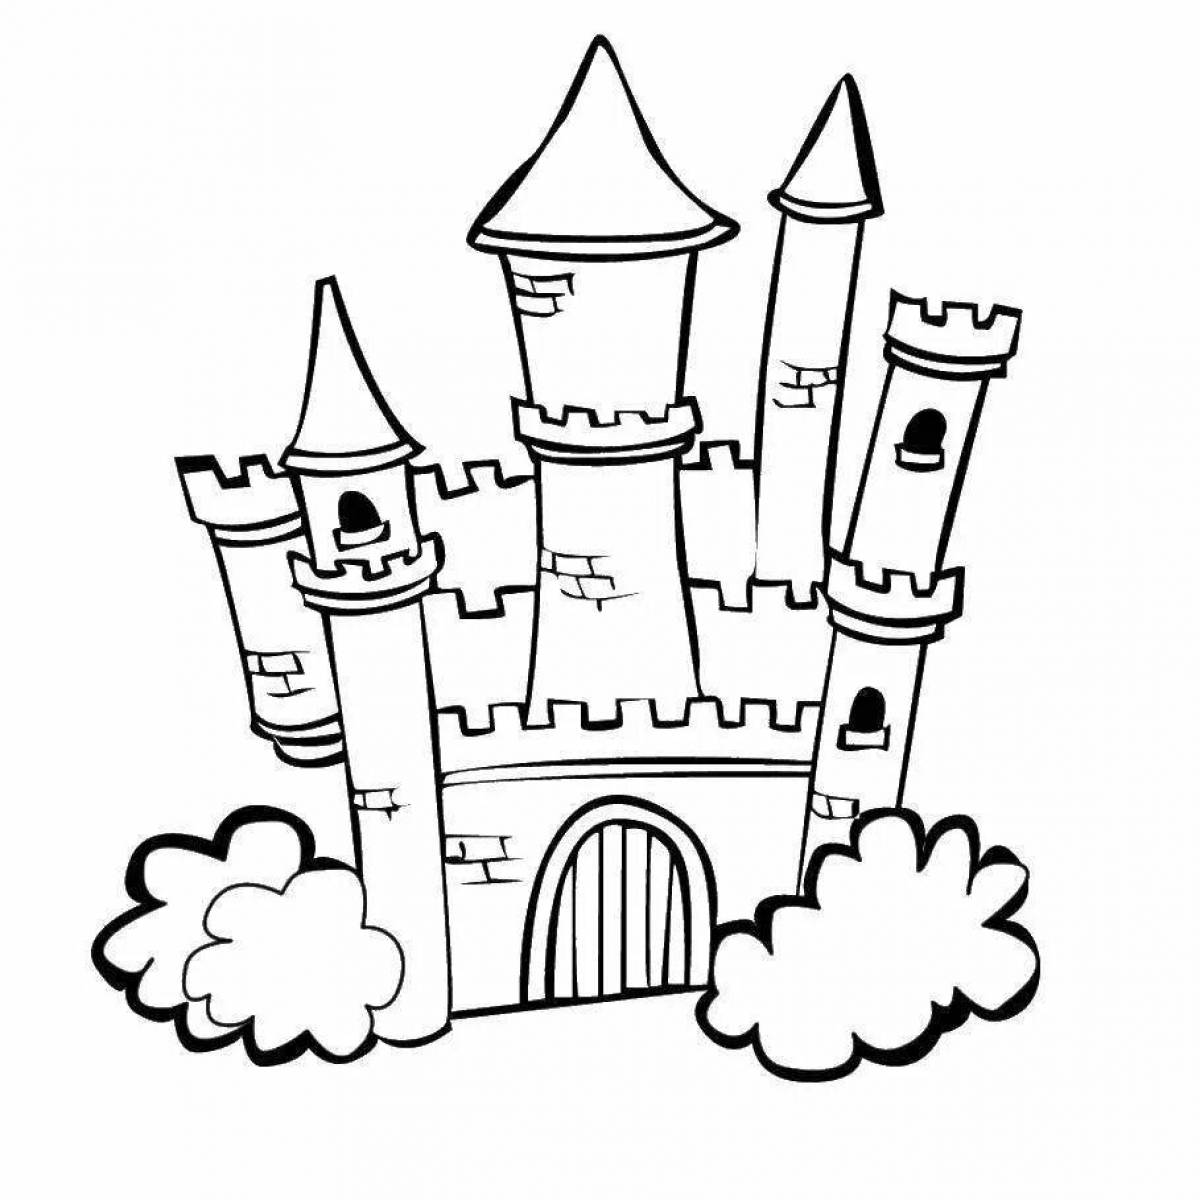 Fairytale castle coloring page